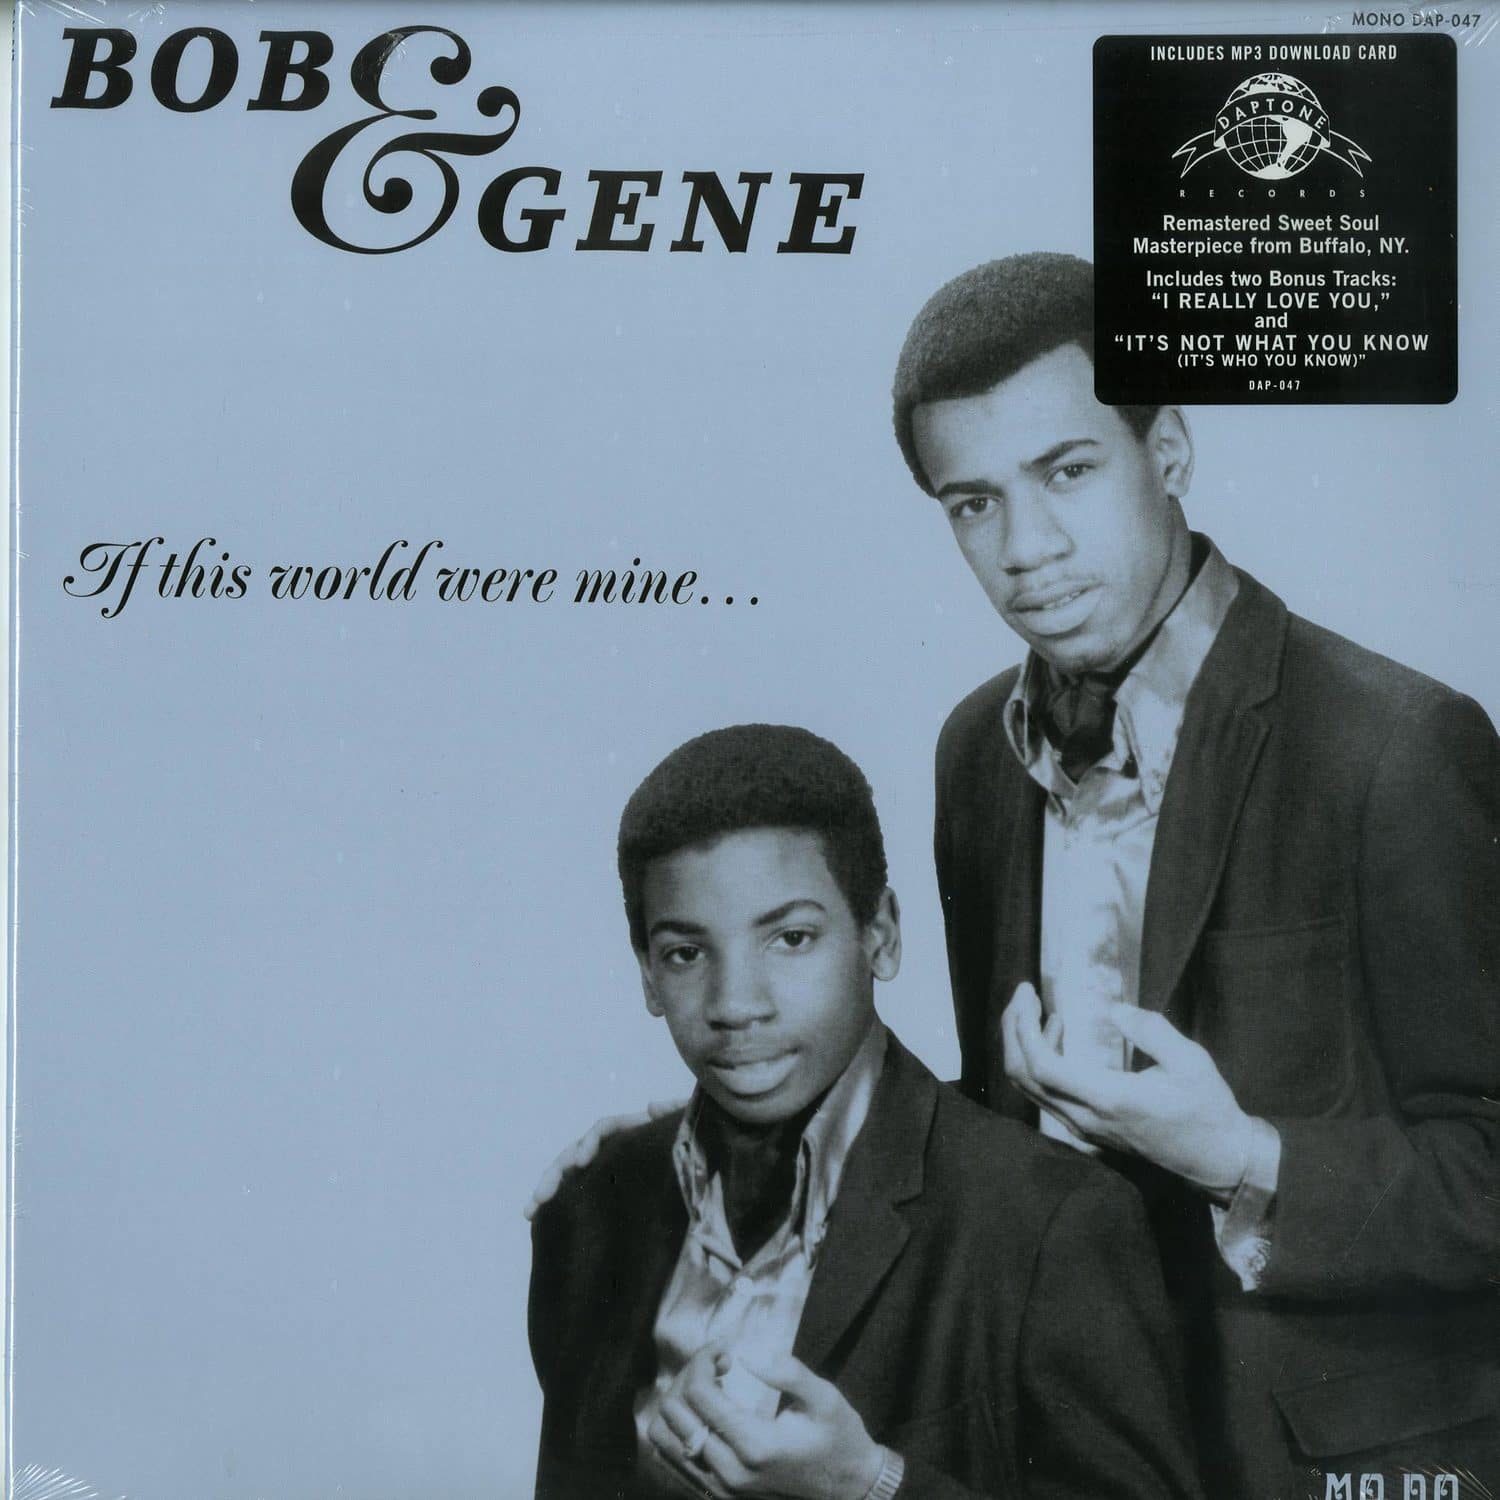 Bob & Gene - IF THIS WORLD WERE MINE... 